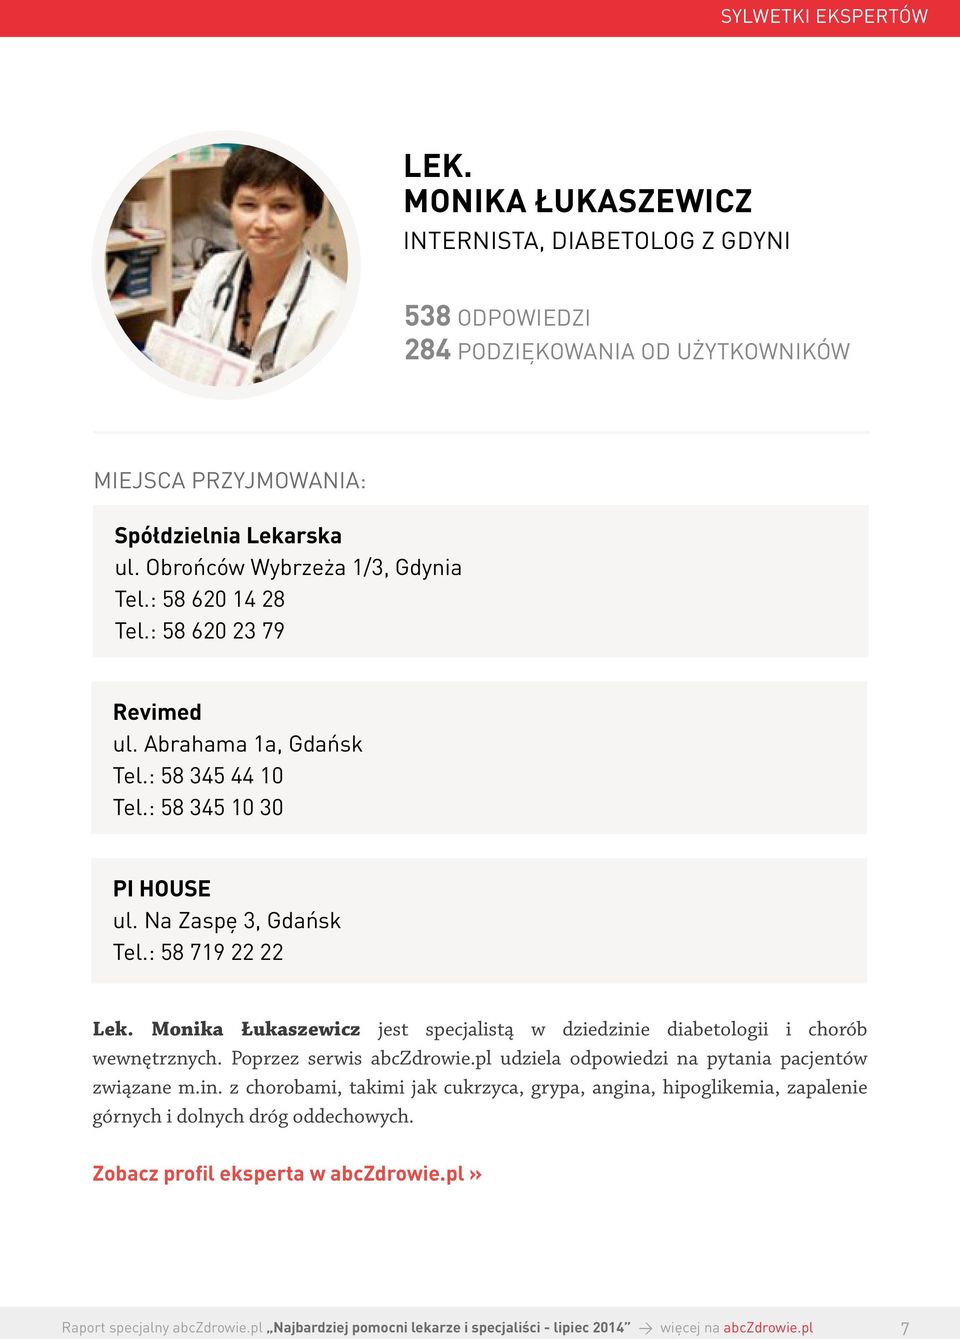 Na Zaspę 3, Gdańsk Tel.: 58 719 22 22 Lek. Monika Łukaszewicz jest specjalistą w dziedzinie diabetologii i chorób wewnętrznych. Poprzez serwis abczdrowie.